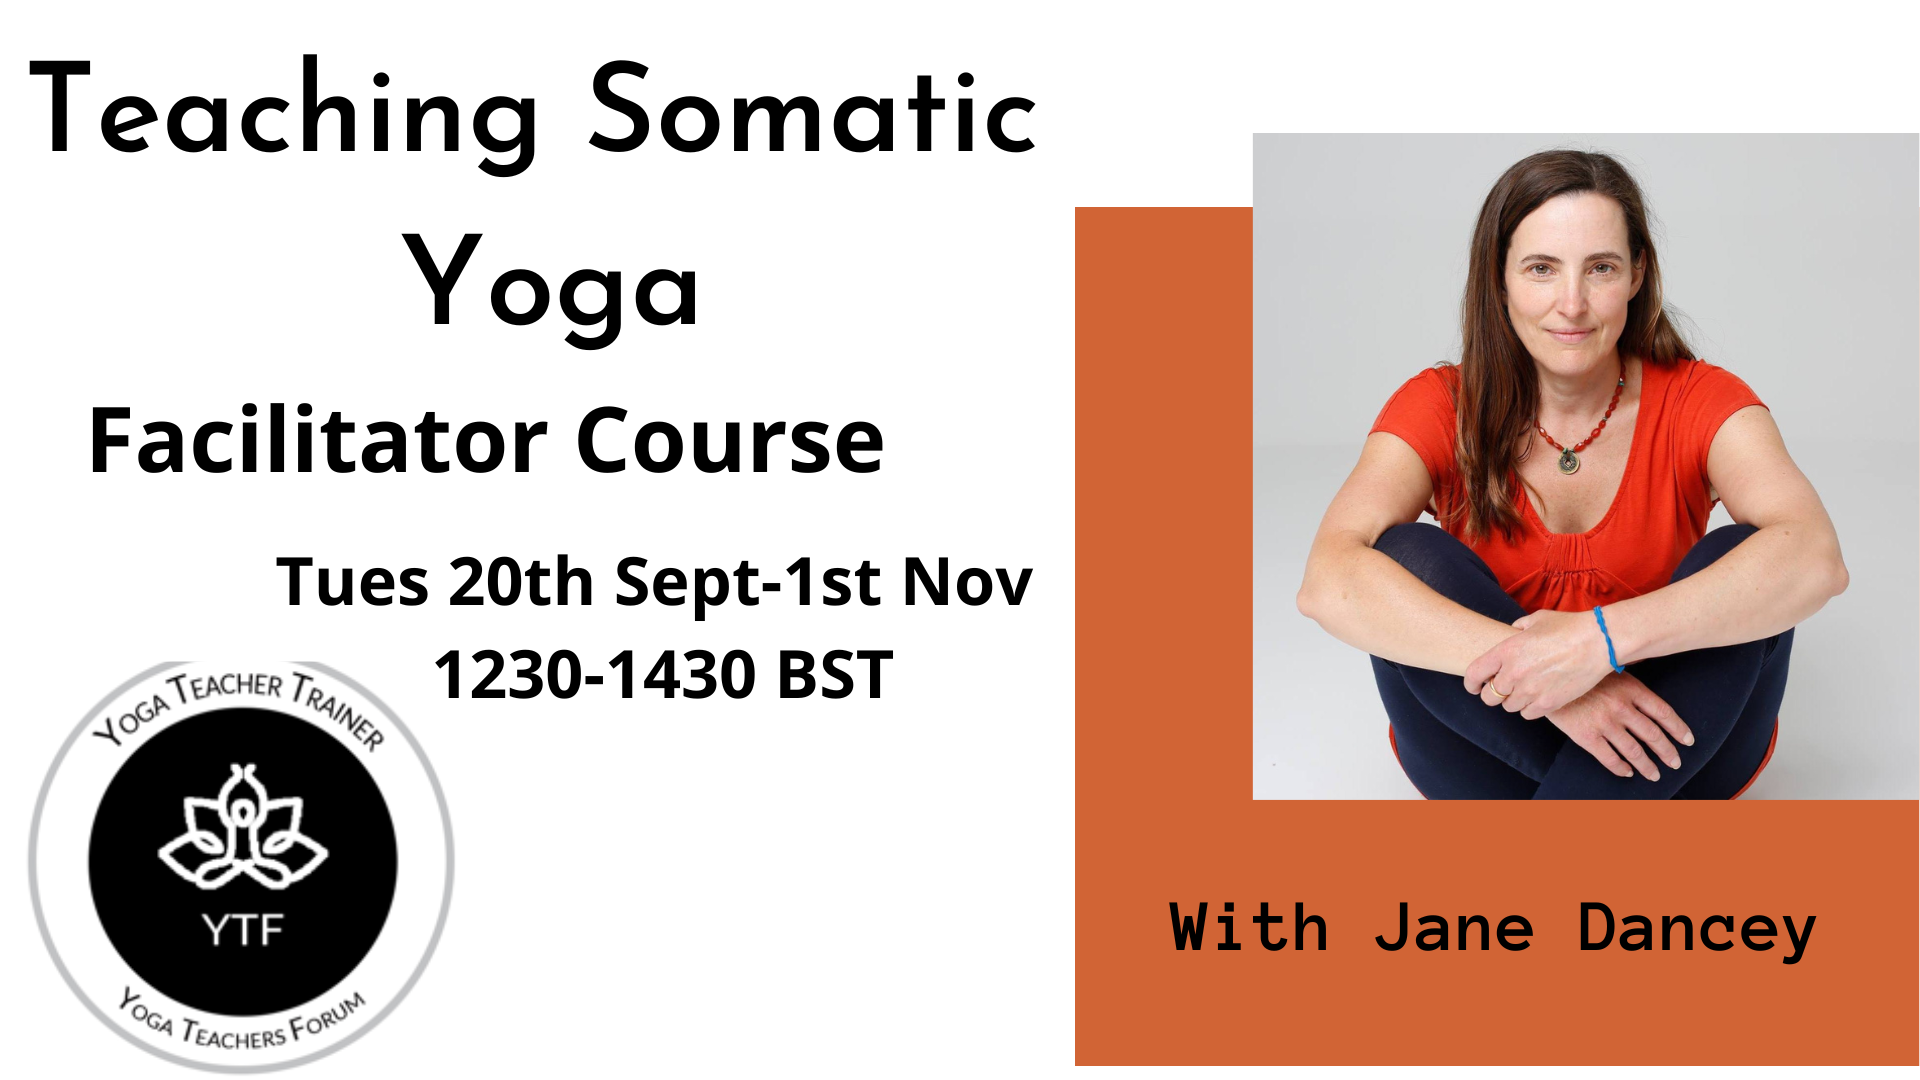 Teaching Somatic Yoga